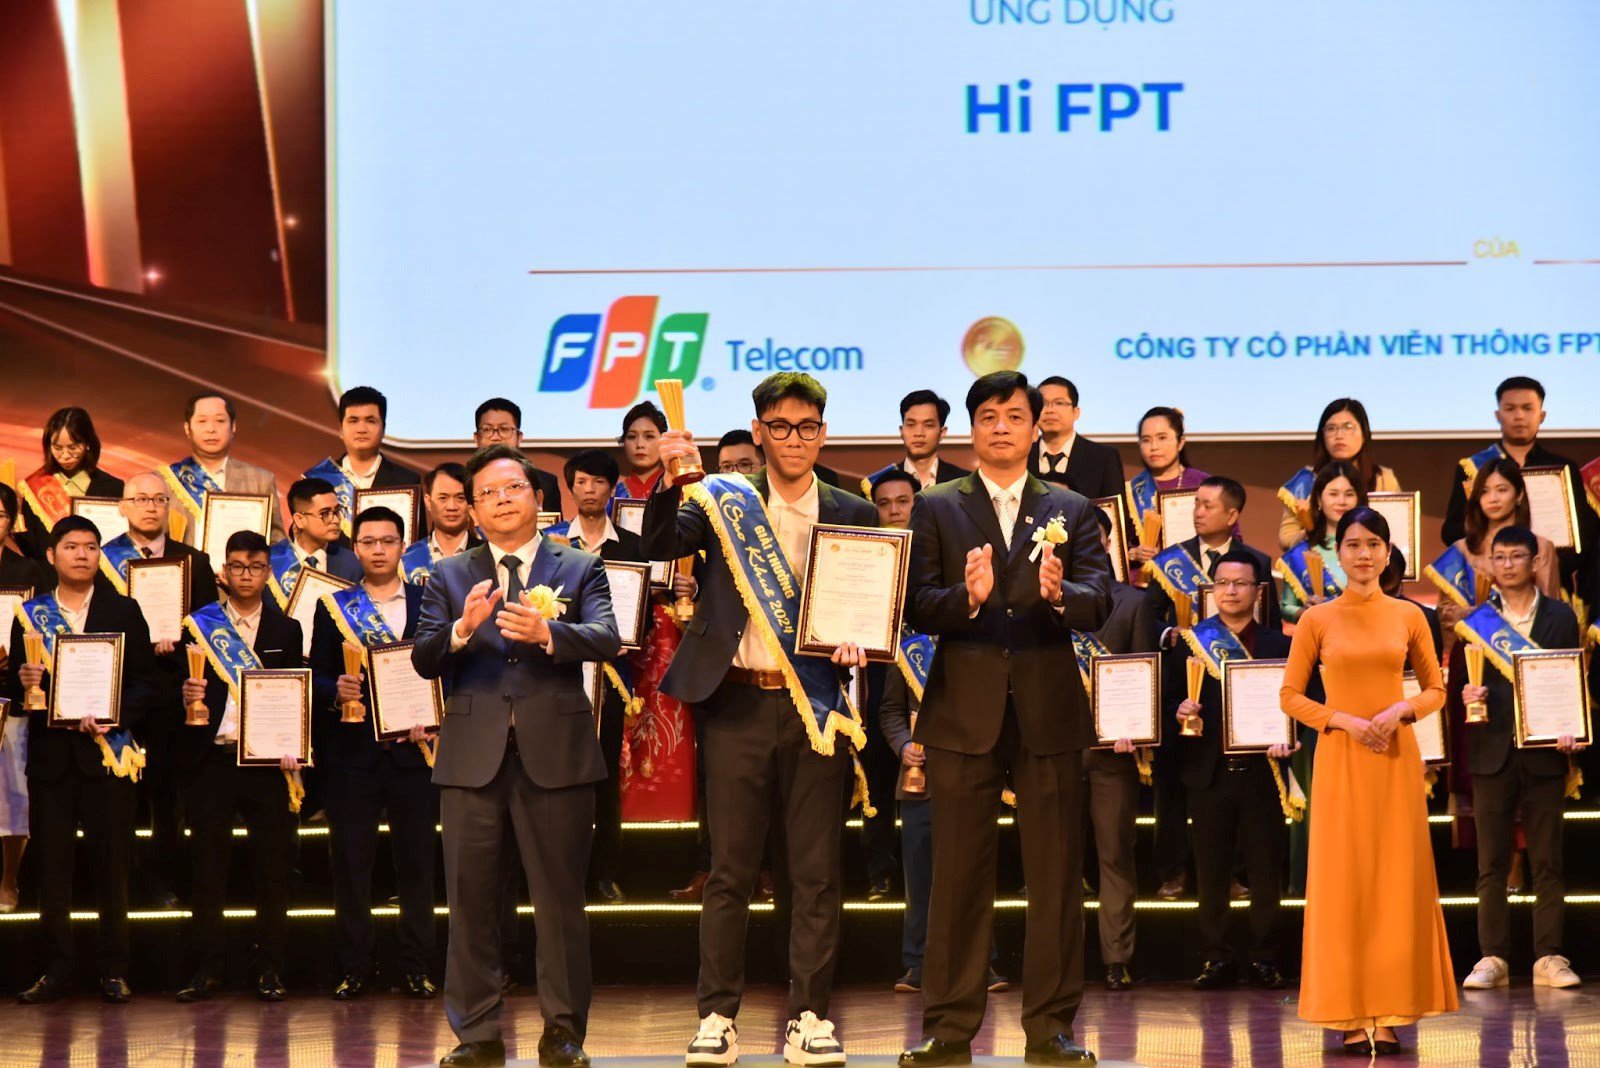 Ông Nguyễn Trung Trực - Phó Giám đốc Hi FPT lên nhận giải thưởng.&nbsp;